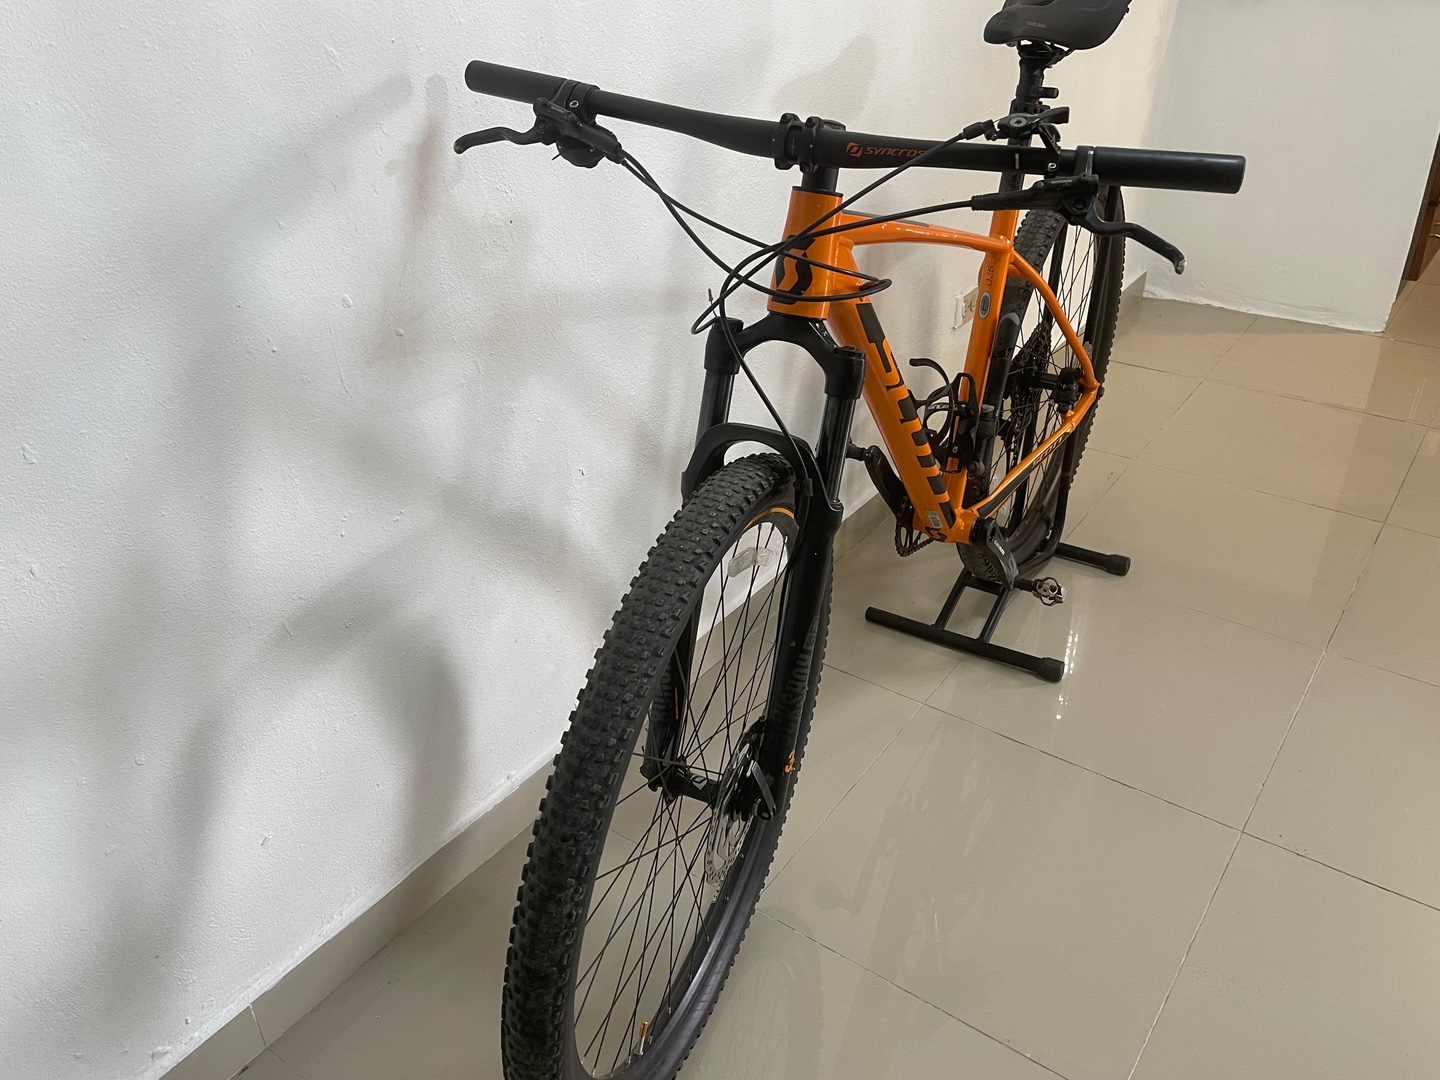 bicicletas y accesorios - Bicicleta Schott 970 color Naranja en Venta. 